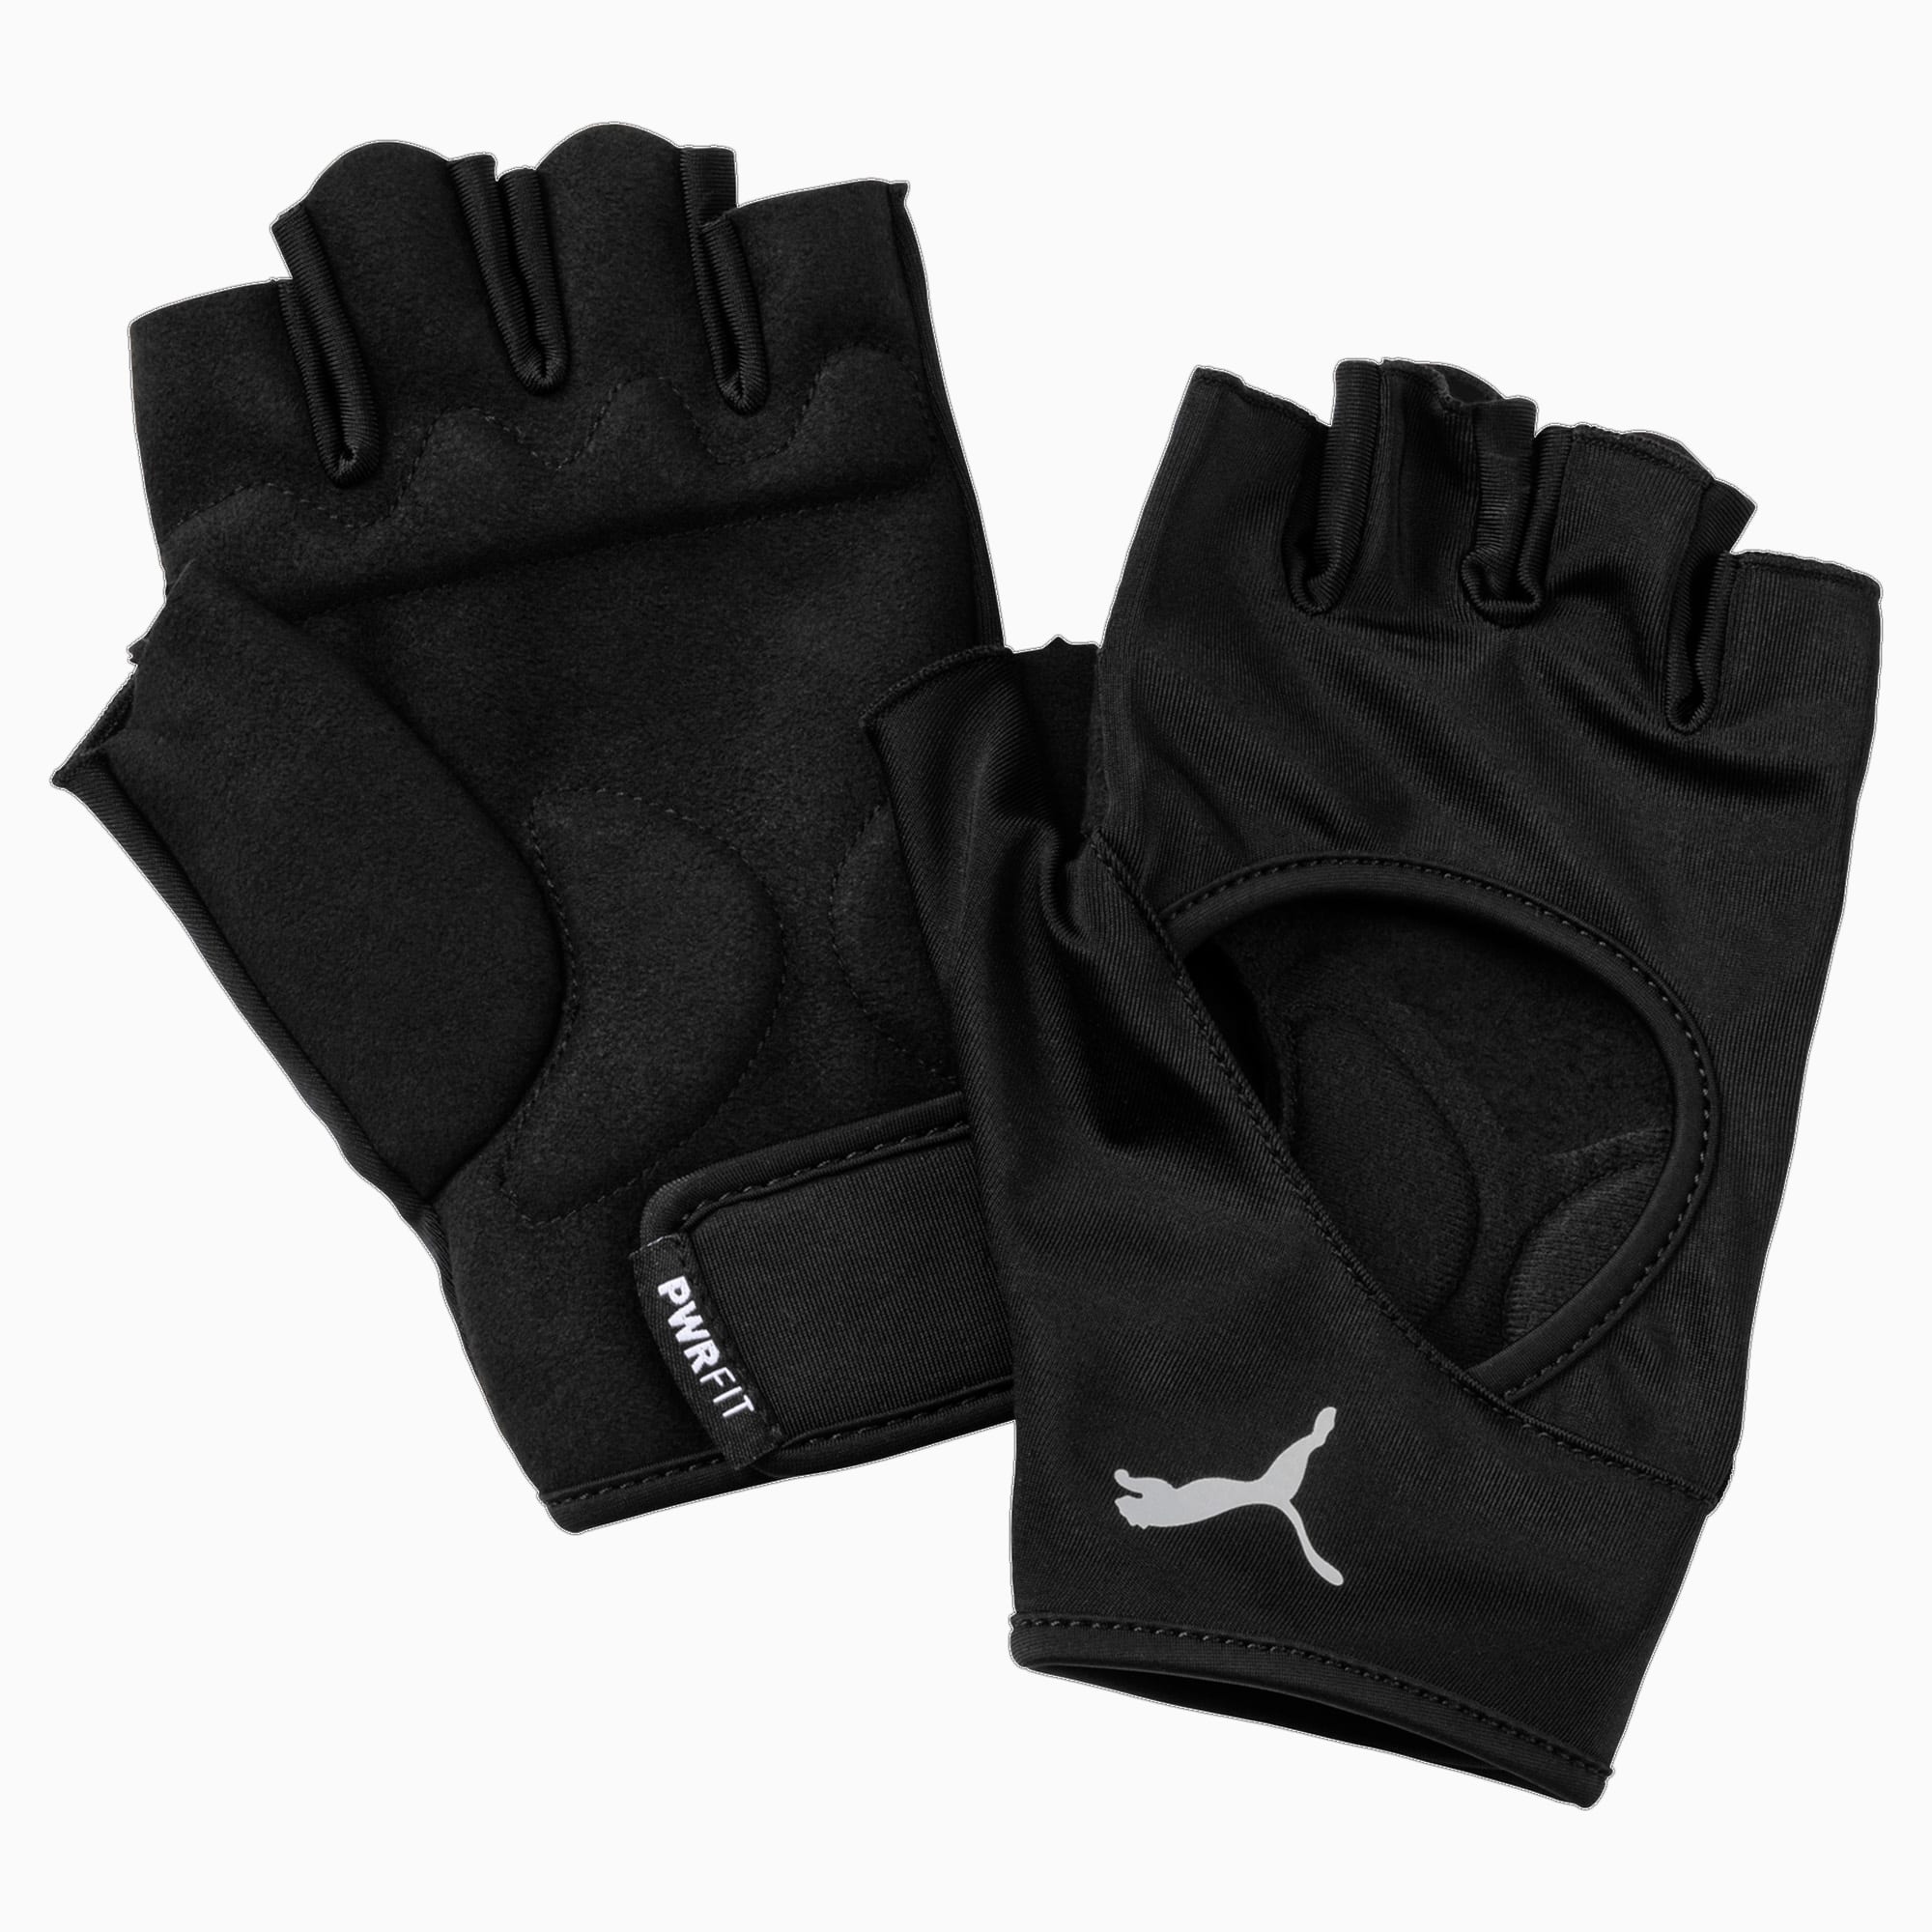 Puma fitnesshandschoenen - Zwart - Maat L